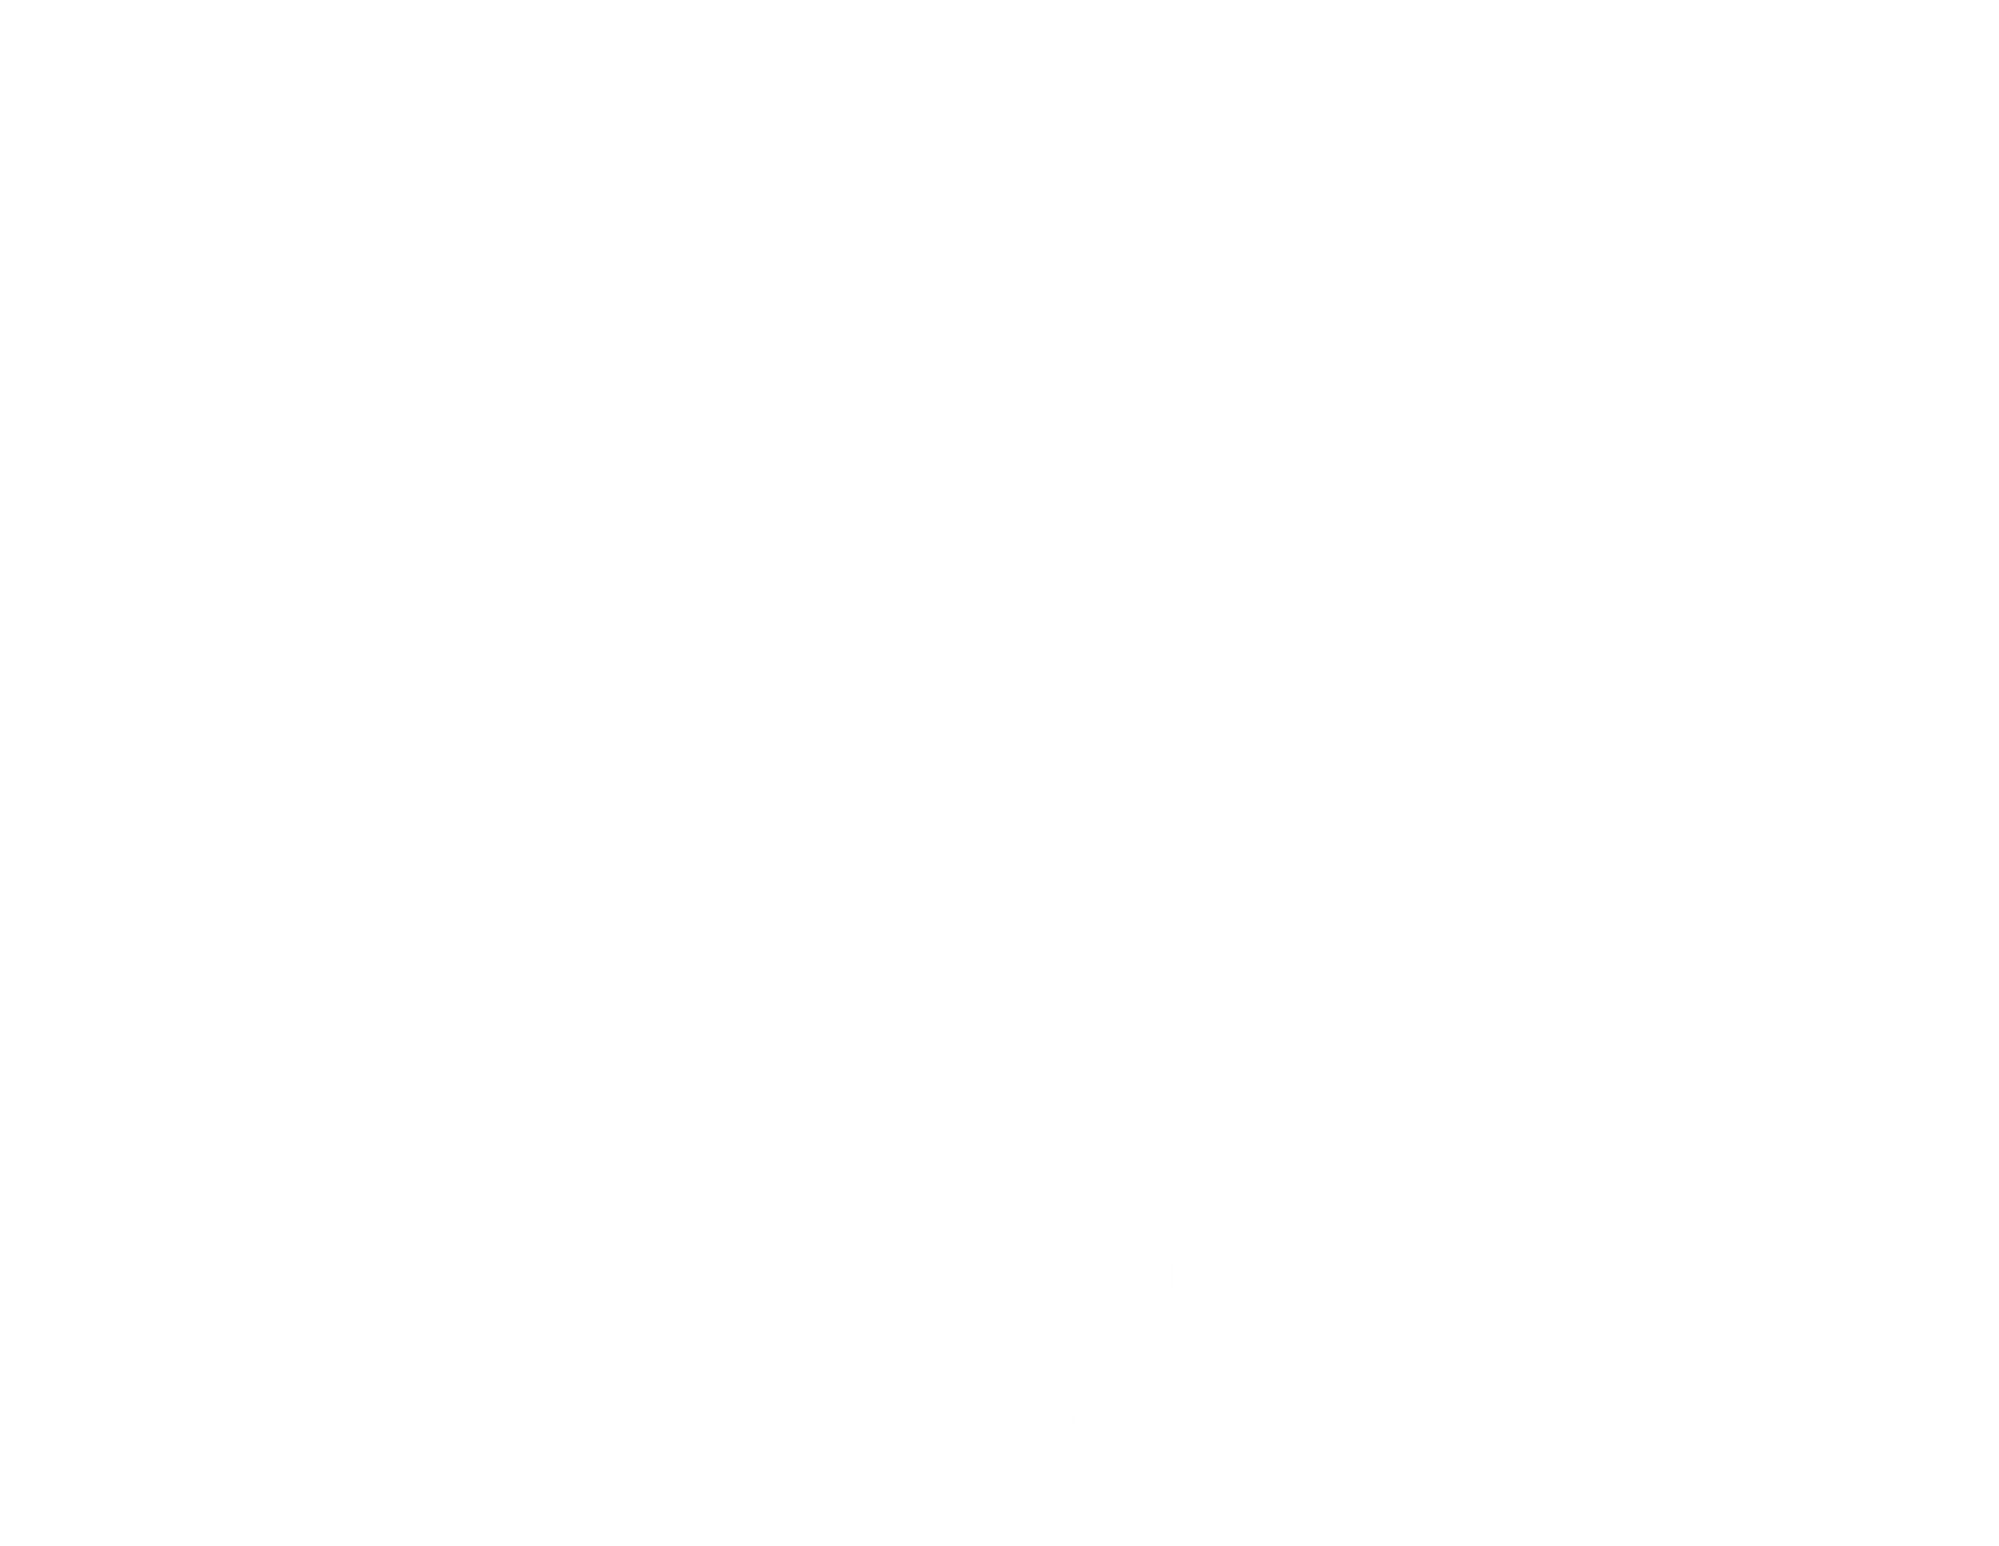 Mueblerías Rodríguez